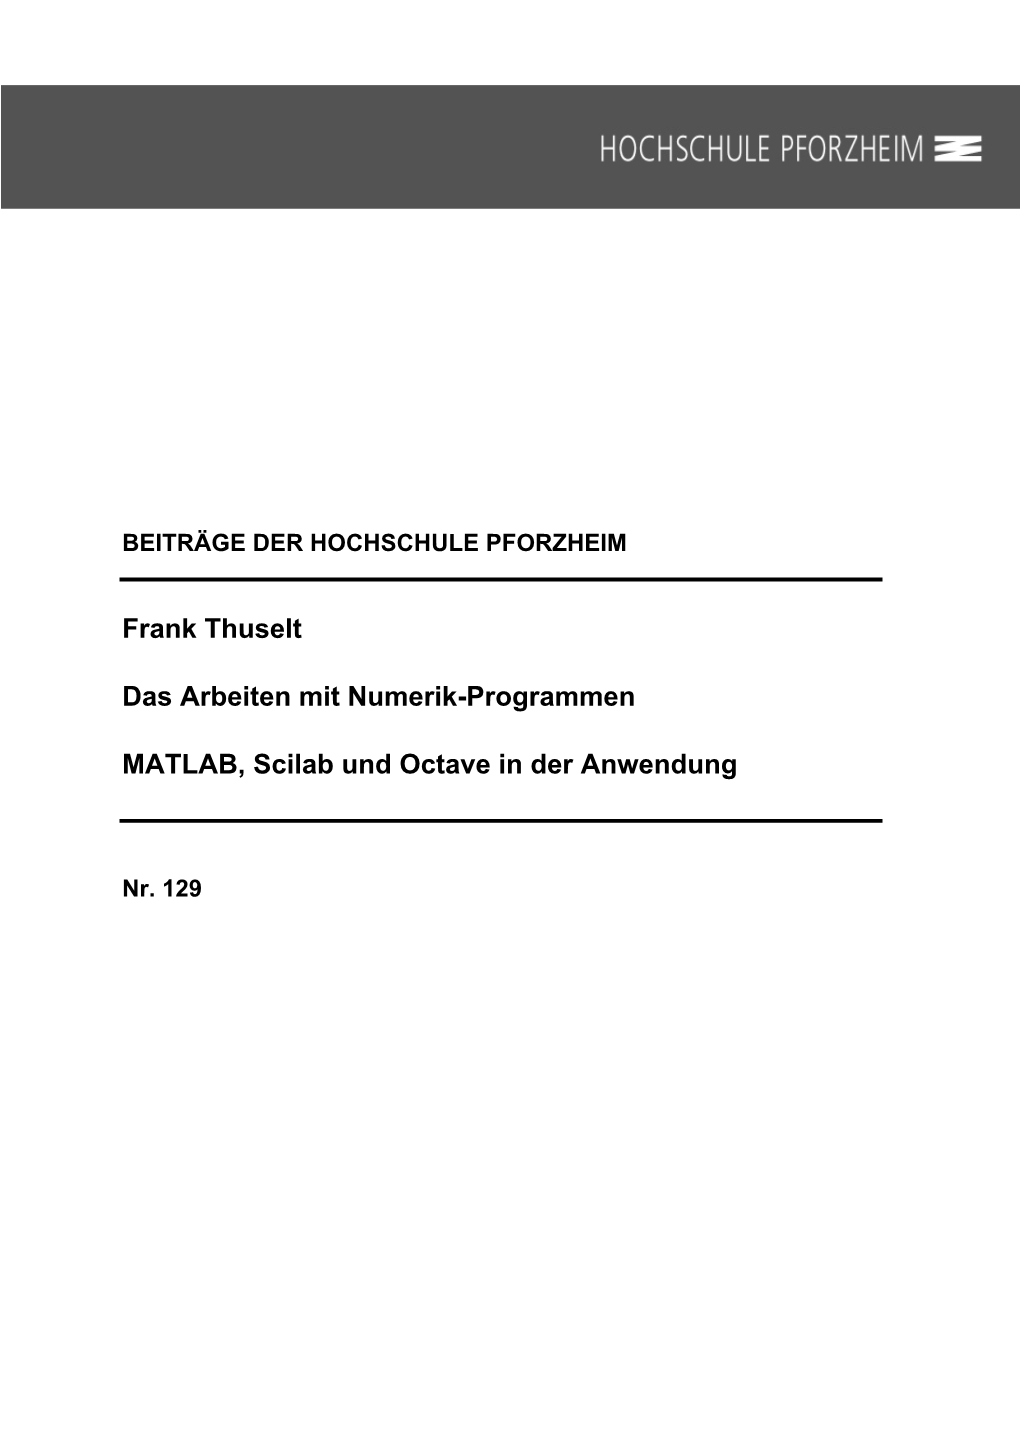 Frank Thuselt Das Arbeiten Mit Numerik-Programmen MATLAB, Scilab Und Octave in Der Anwendung